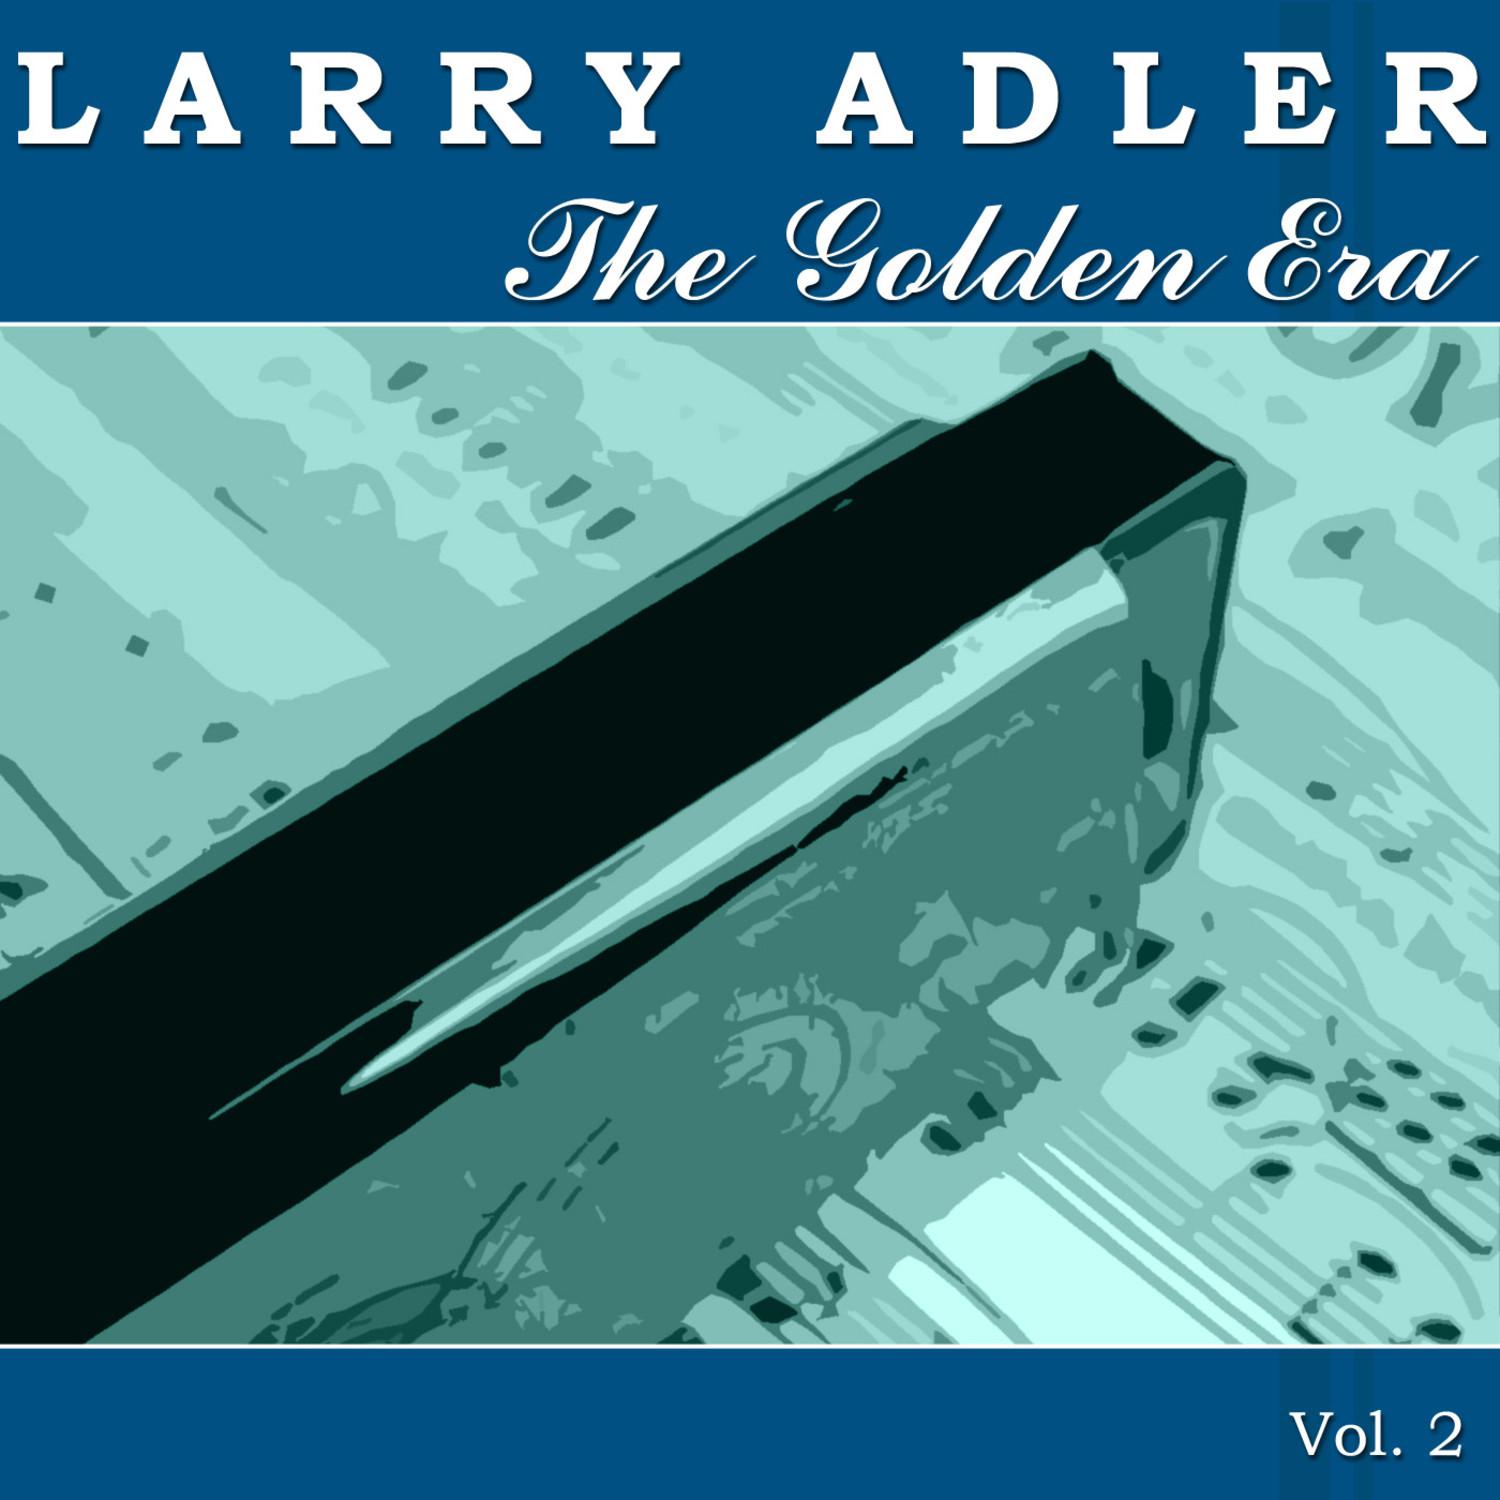 The Golden Era of Larry Adler - Vol. 2